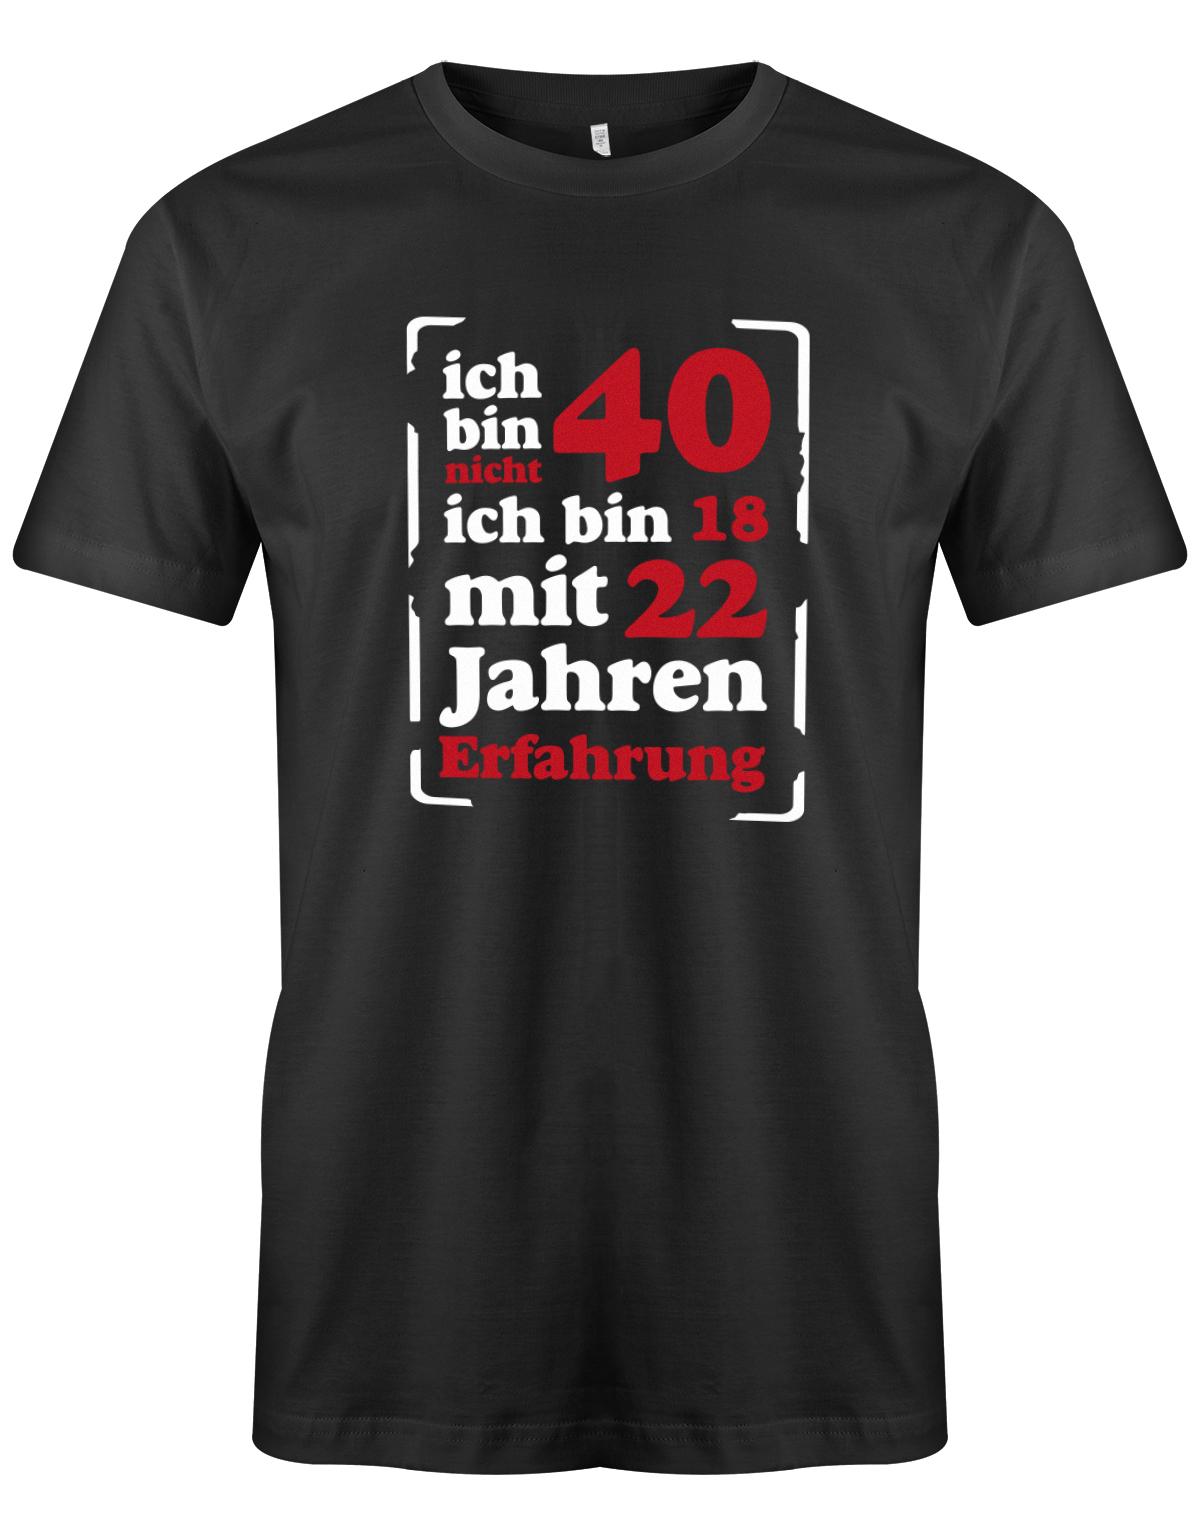 Ich bin nicht 40 ich bin 18 mit 22 Jahren Erfahrung - T-Shirt 40 Geburtstag Männer myShirtStore Schwarz